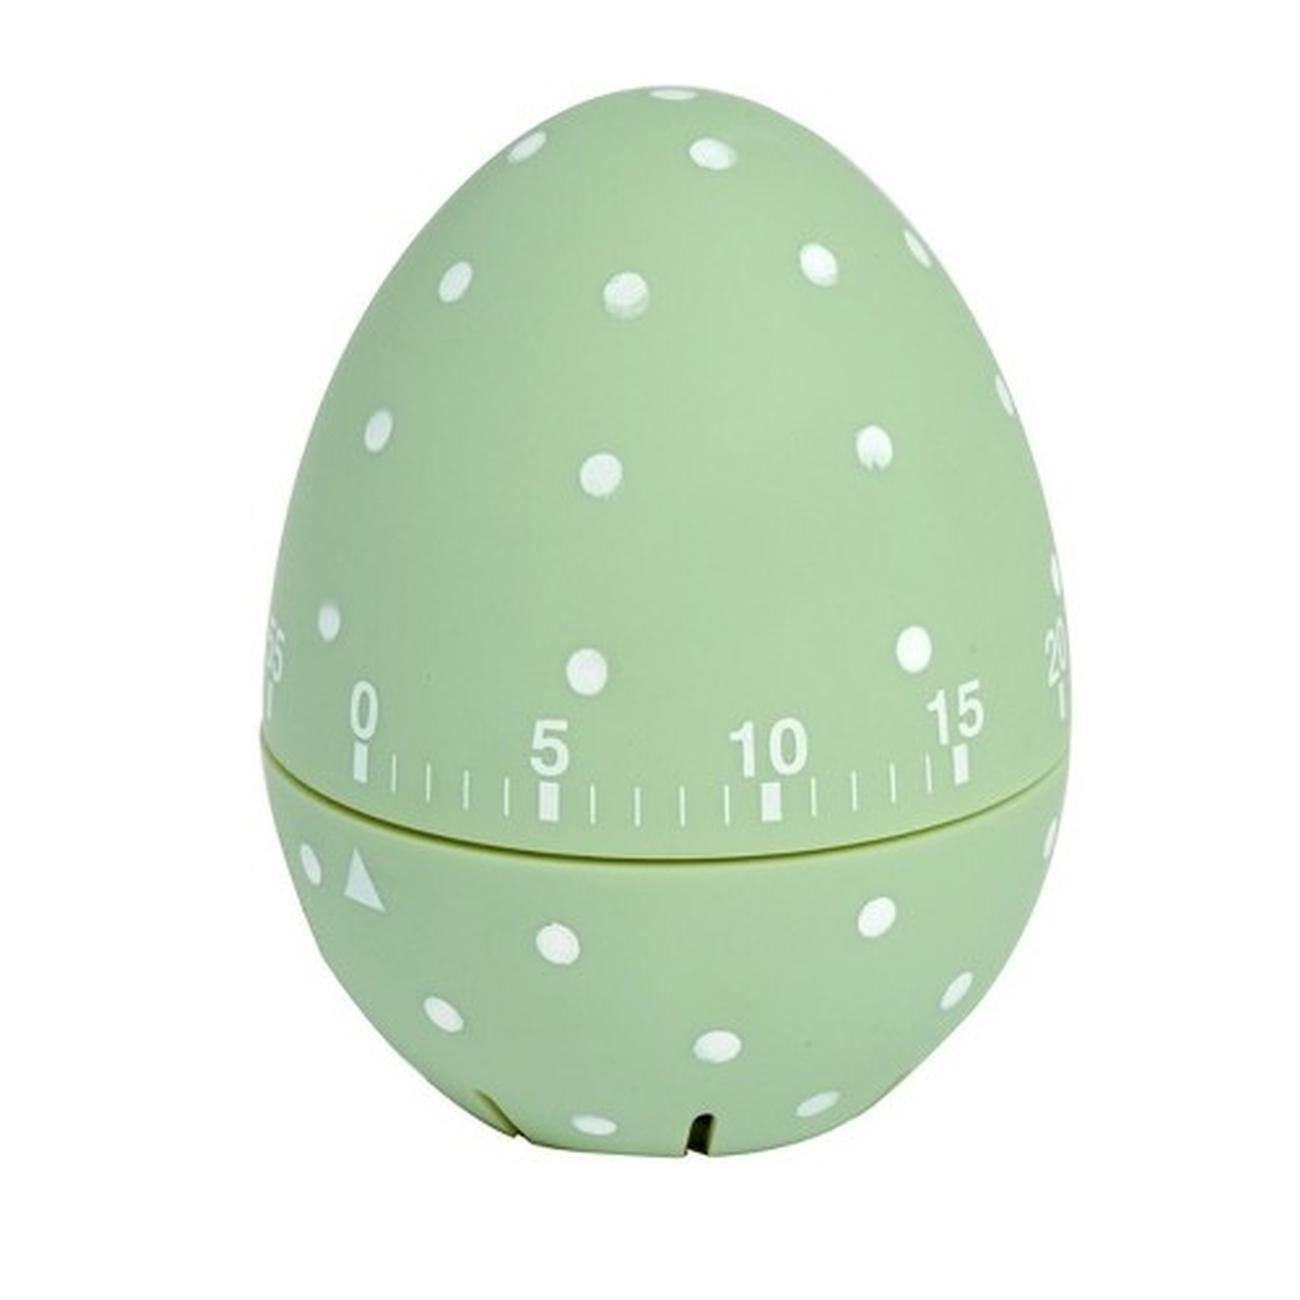 edd-dotty-egg-timer-green - Eddingtons Dotty Egg Timer Green